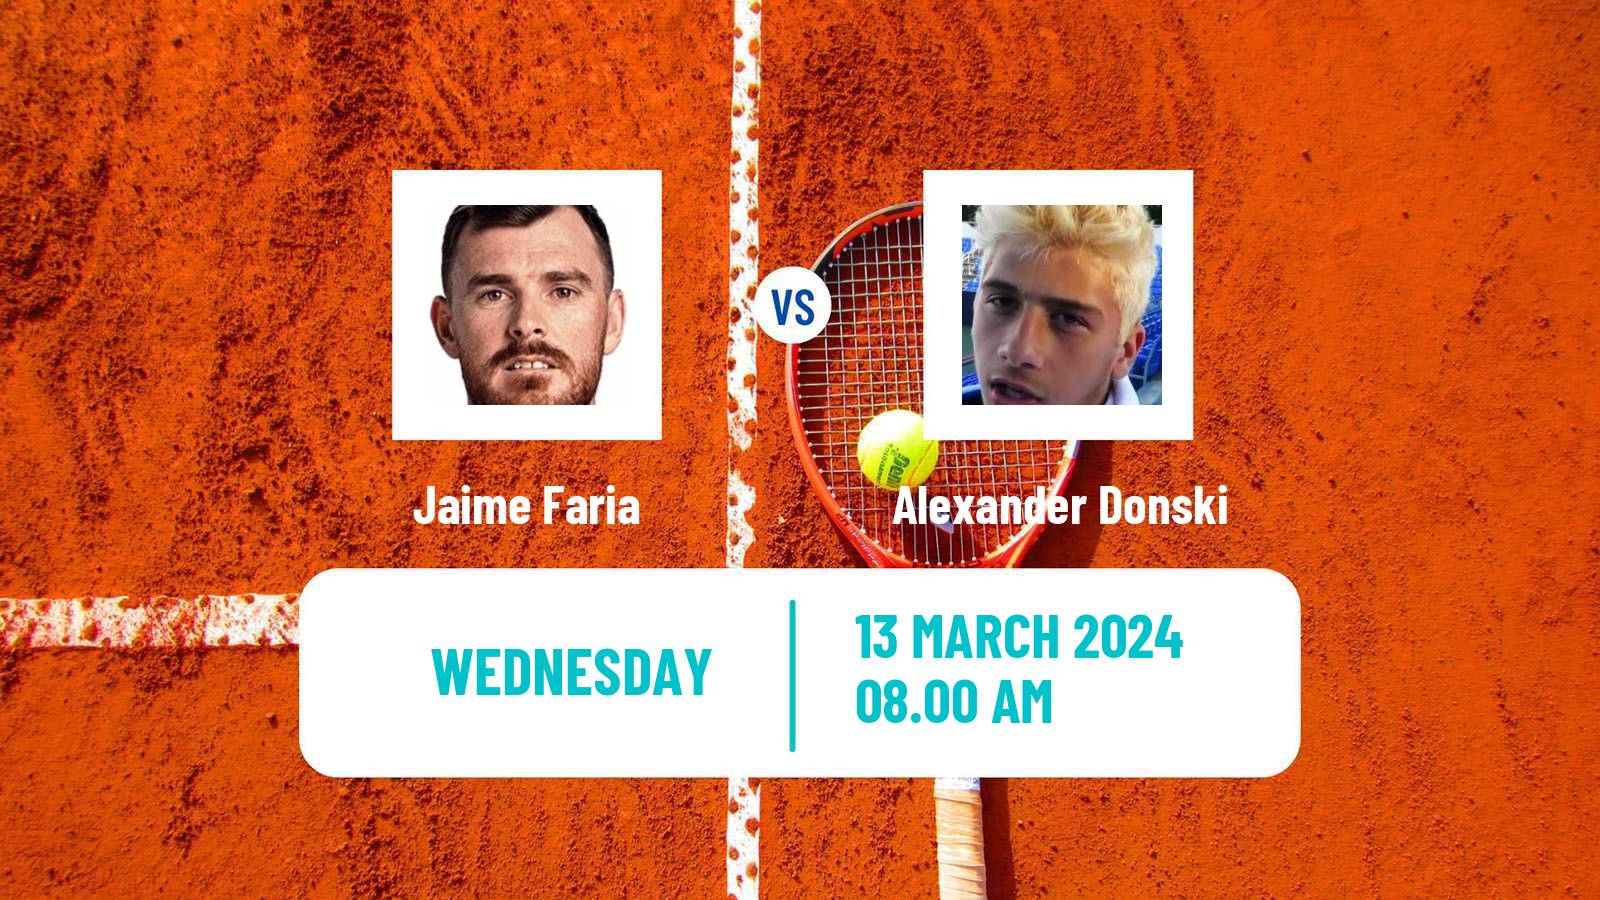 Tennis ITF M25 Vale Do Lobo Men Jaime Faria - Alexander Donski